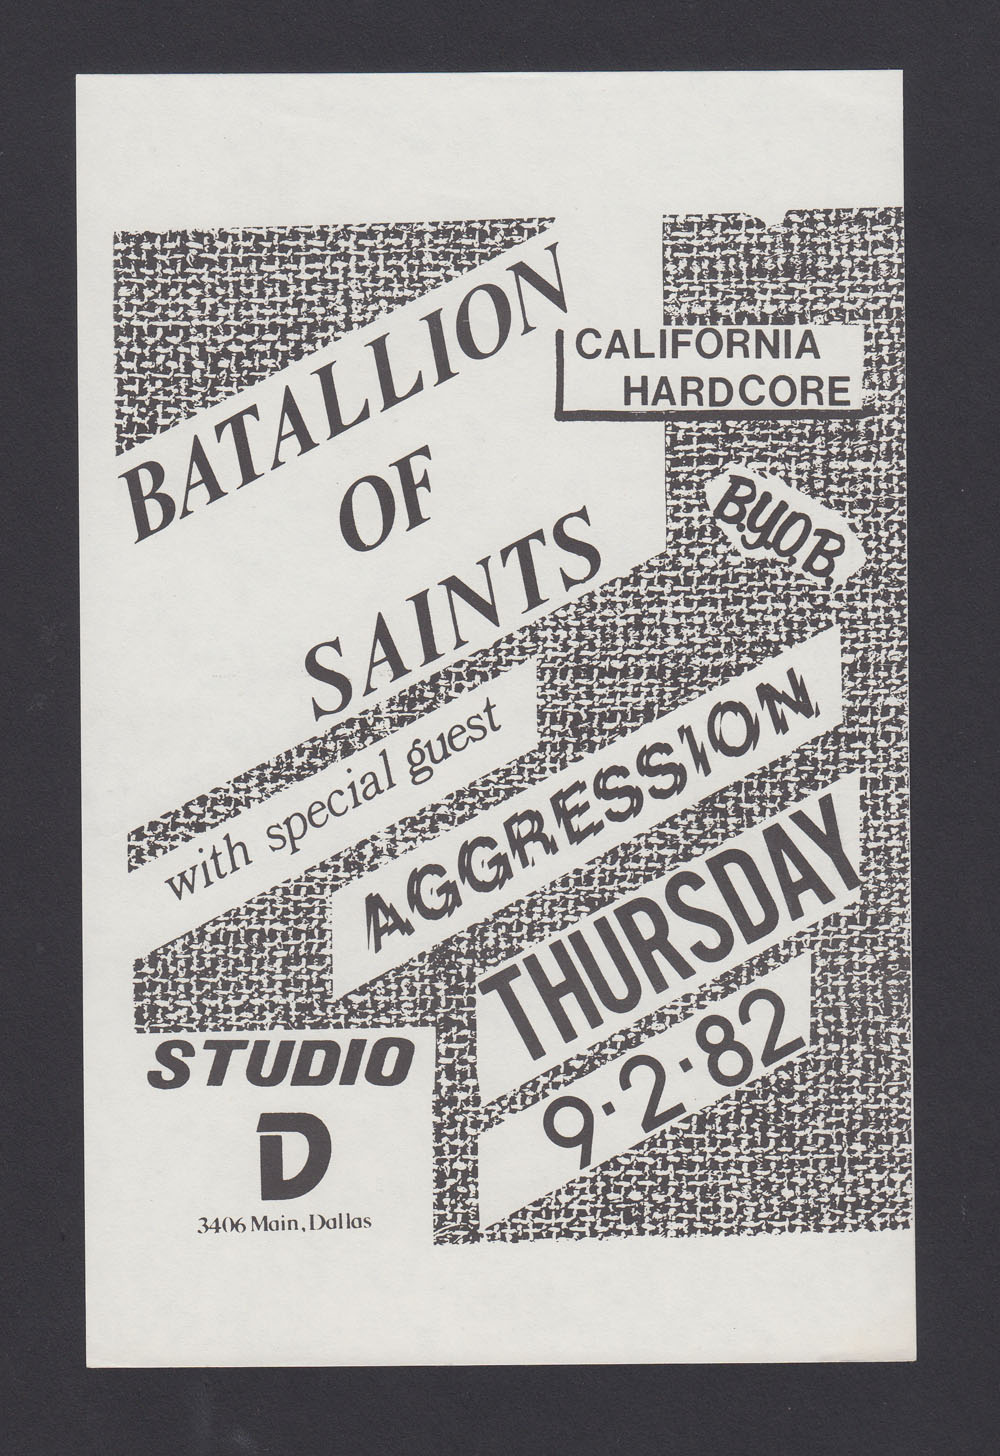 BATTALION OF SAINTS w/ Agression at Studio D